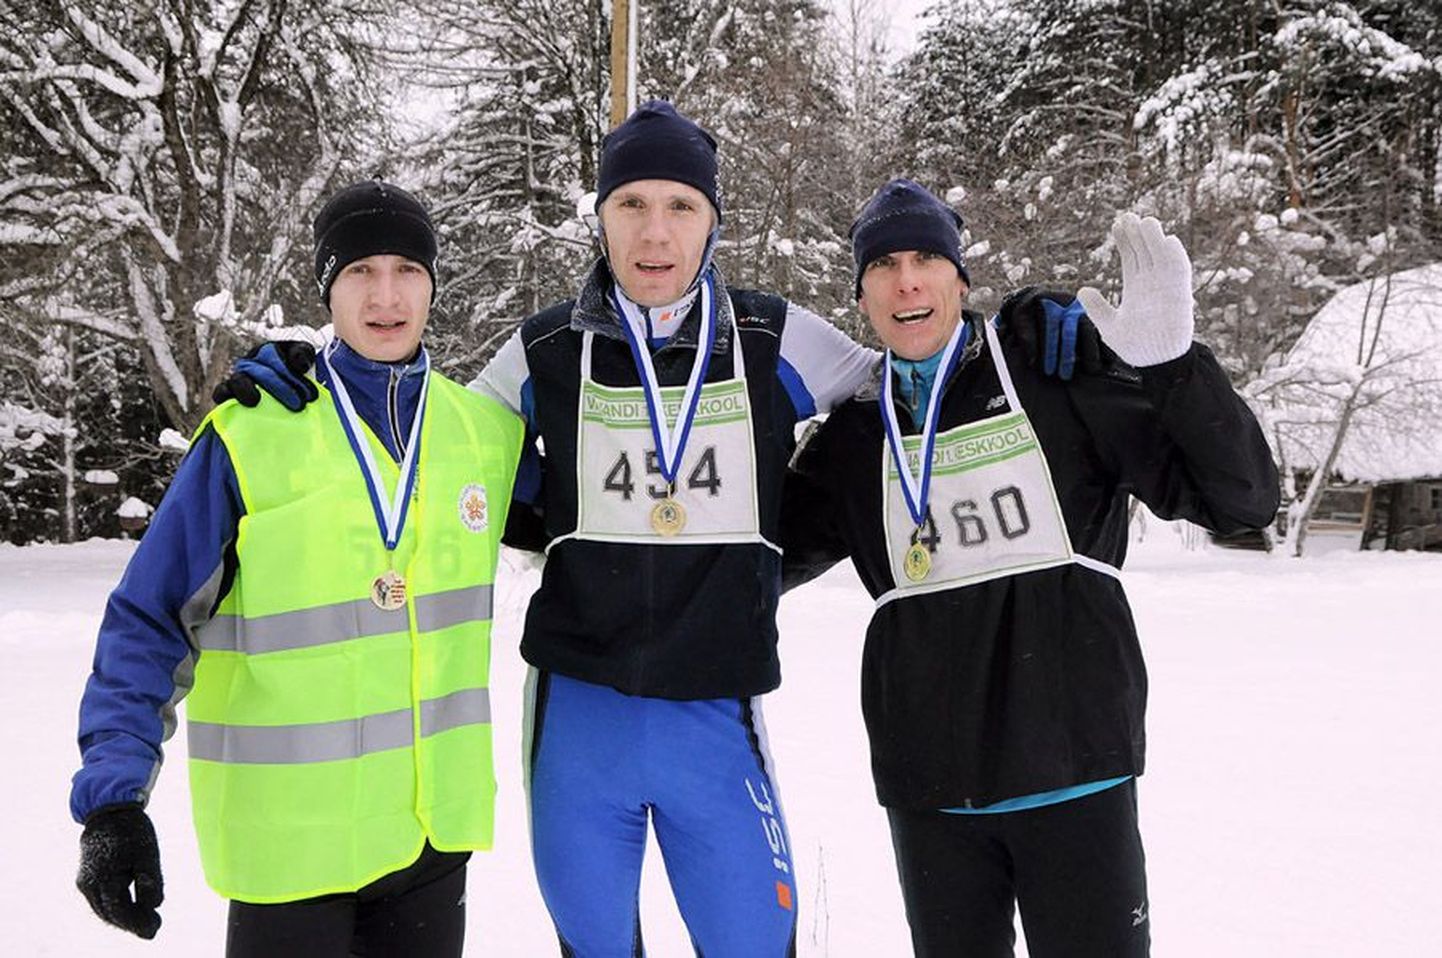 Staieri jõulujooksu kolm kiiremat olid Lauri Soolo (vaskul), Raivo Nõmm ja Ergo Kilki.